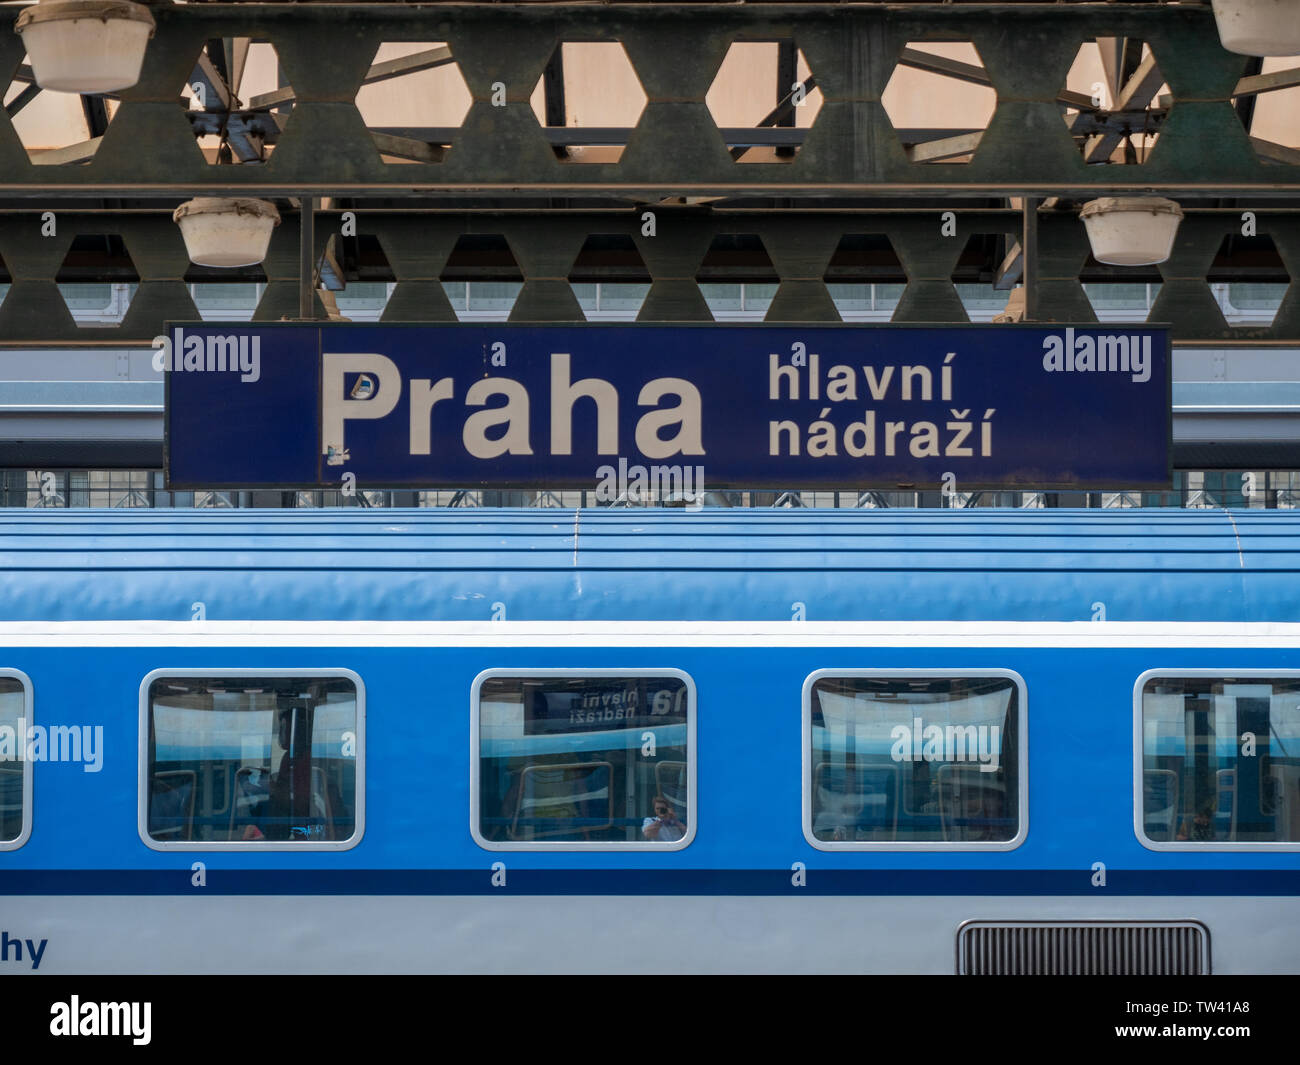 Praga, Repubblica Ceca - 10 Giugno 2019: la piattaforma di Praga la stazione principale e una stazione del Cesky Drahy, le ferrovie ceche. Foto Stock